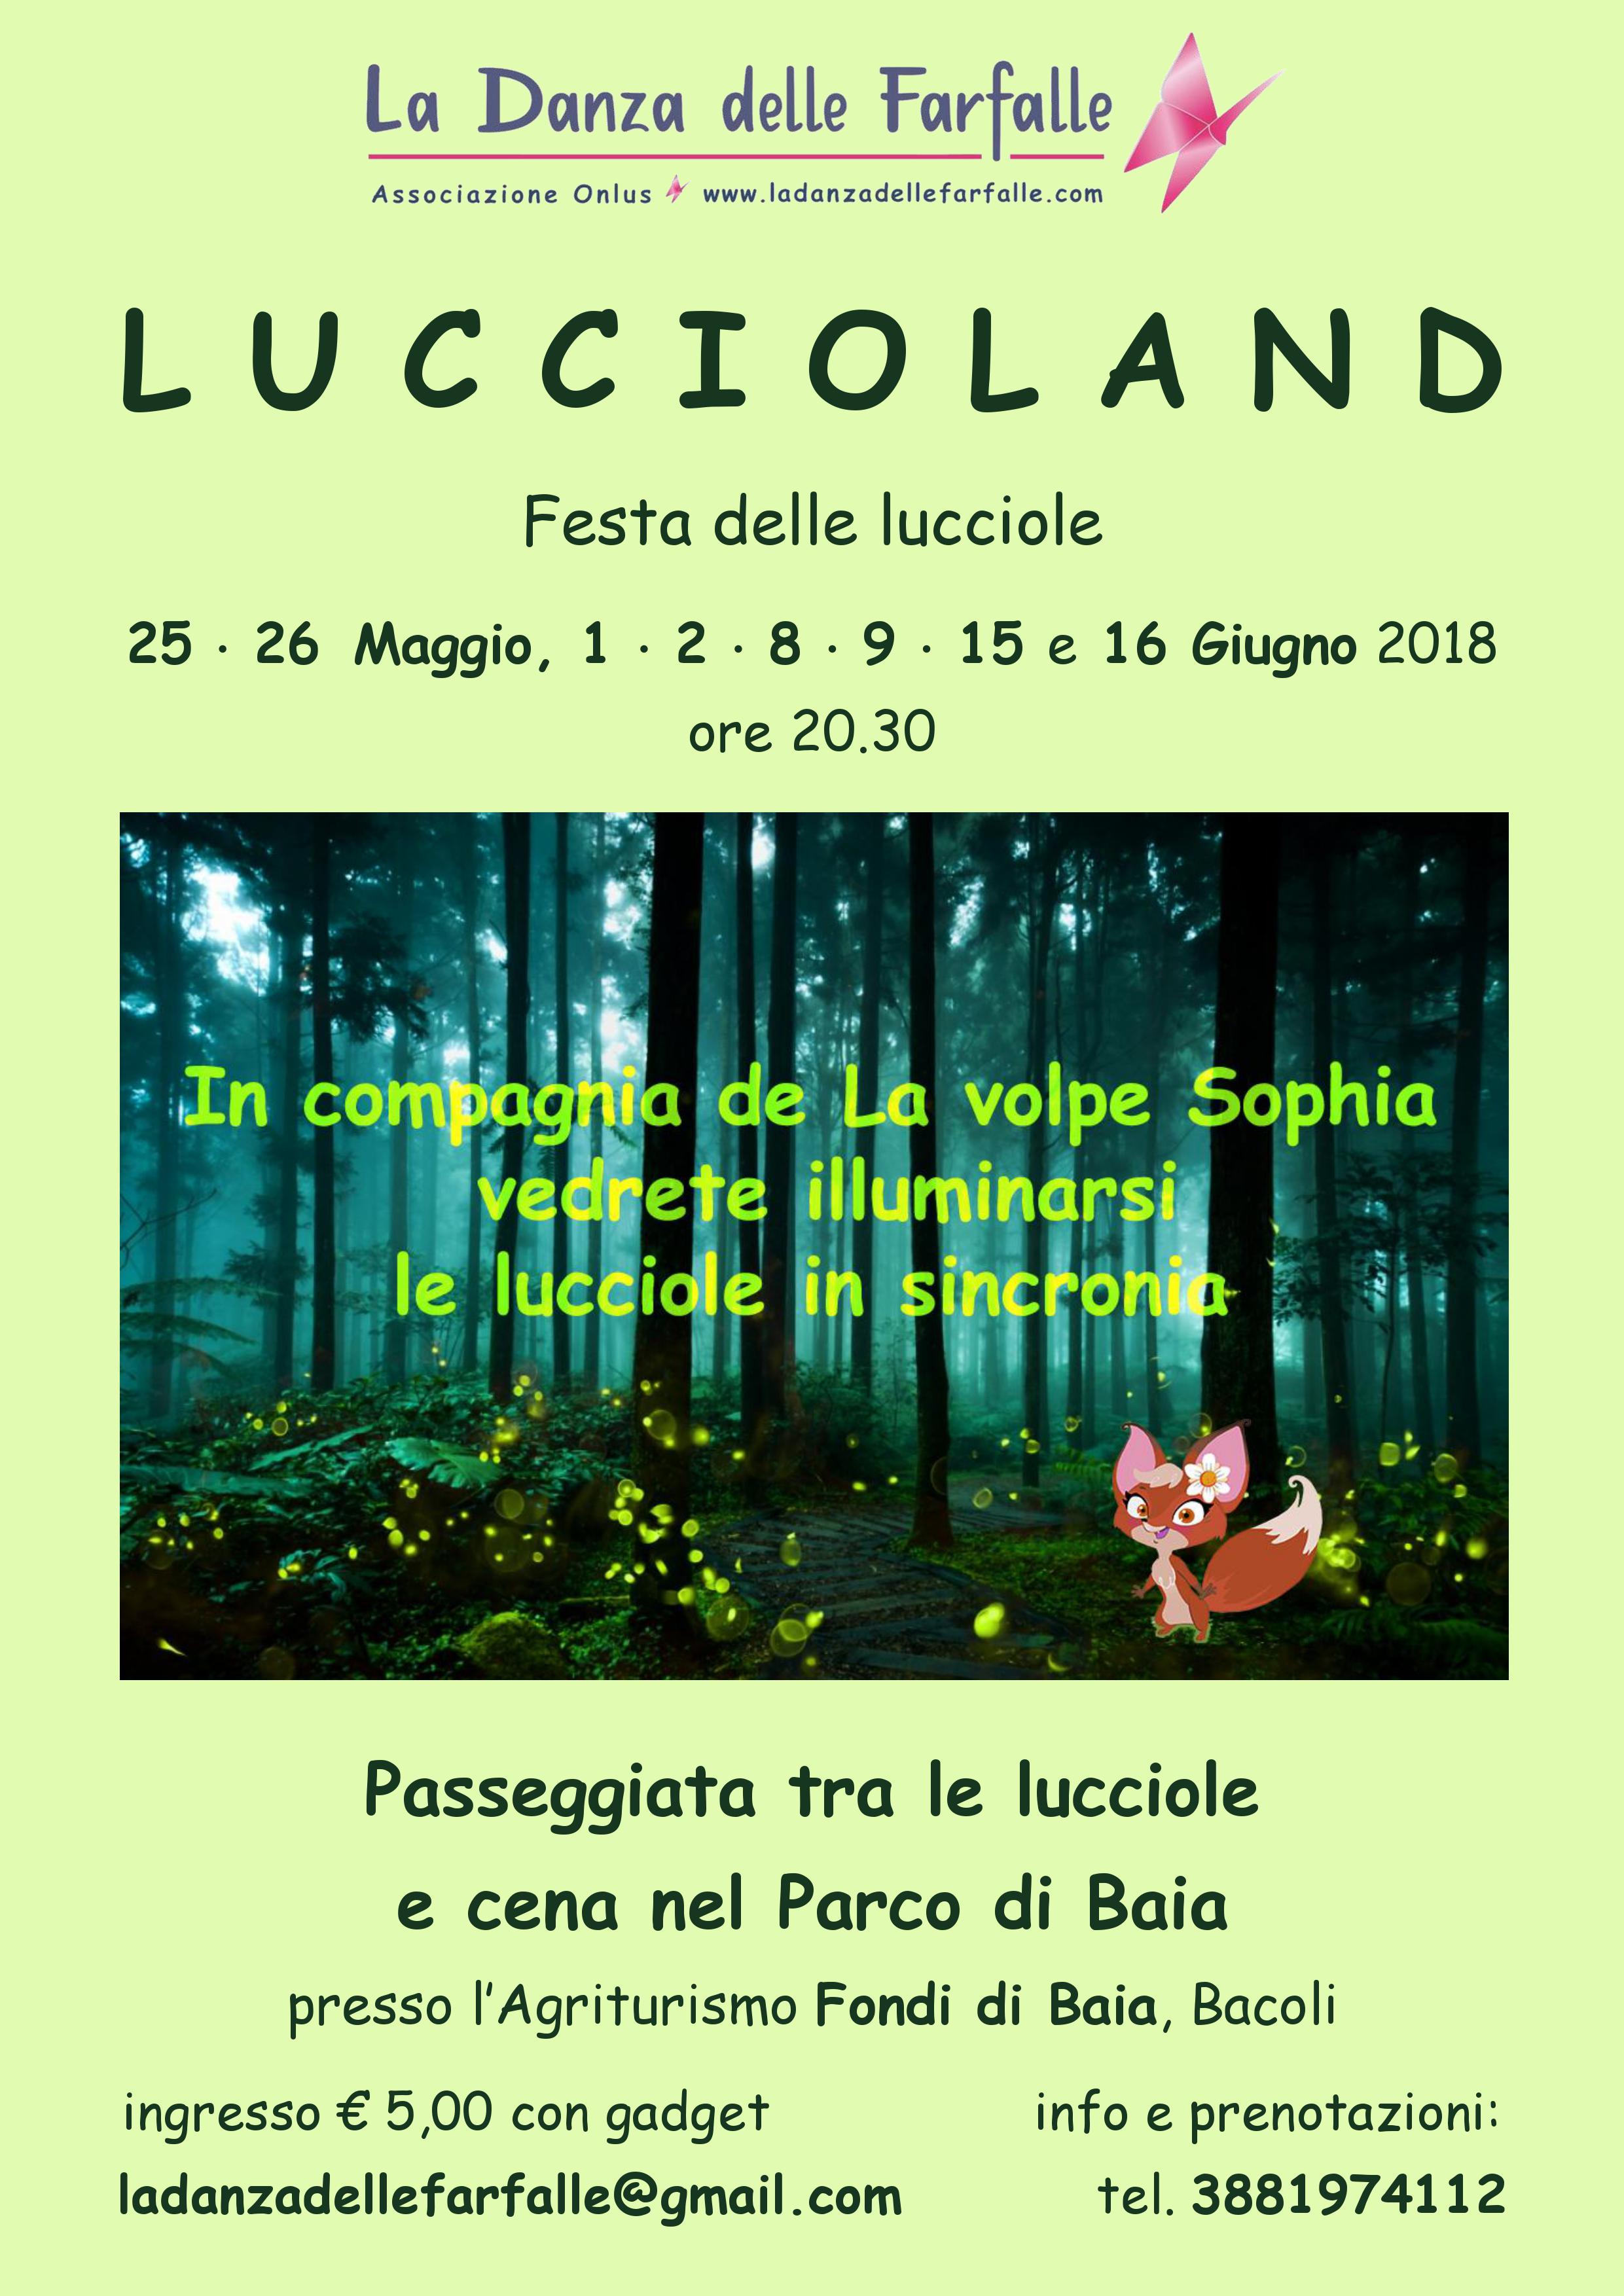 Luccioland-La Danza delle Farfalle Onlus Parco-di-Baia Maggio Giugno 2018